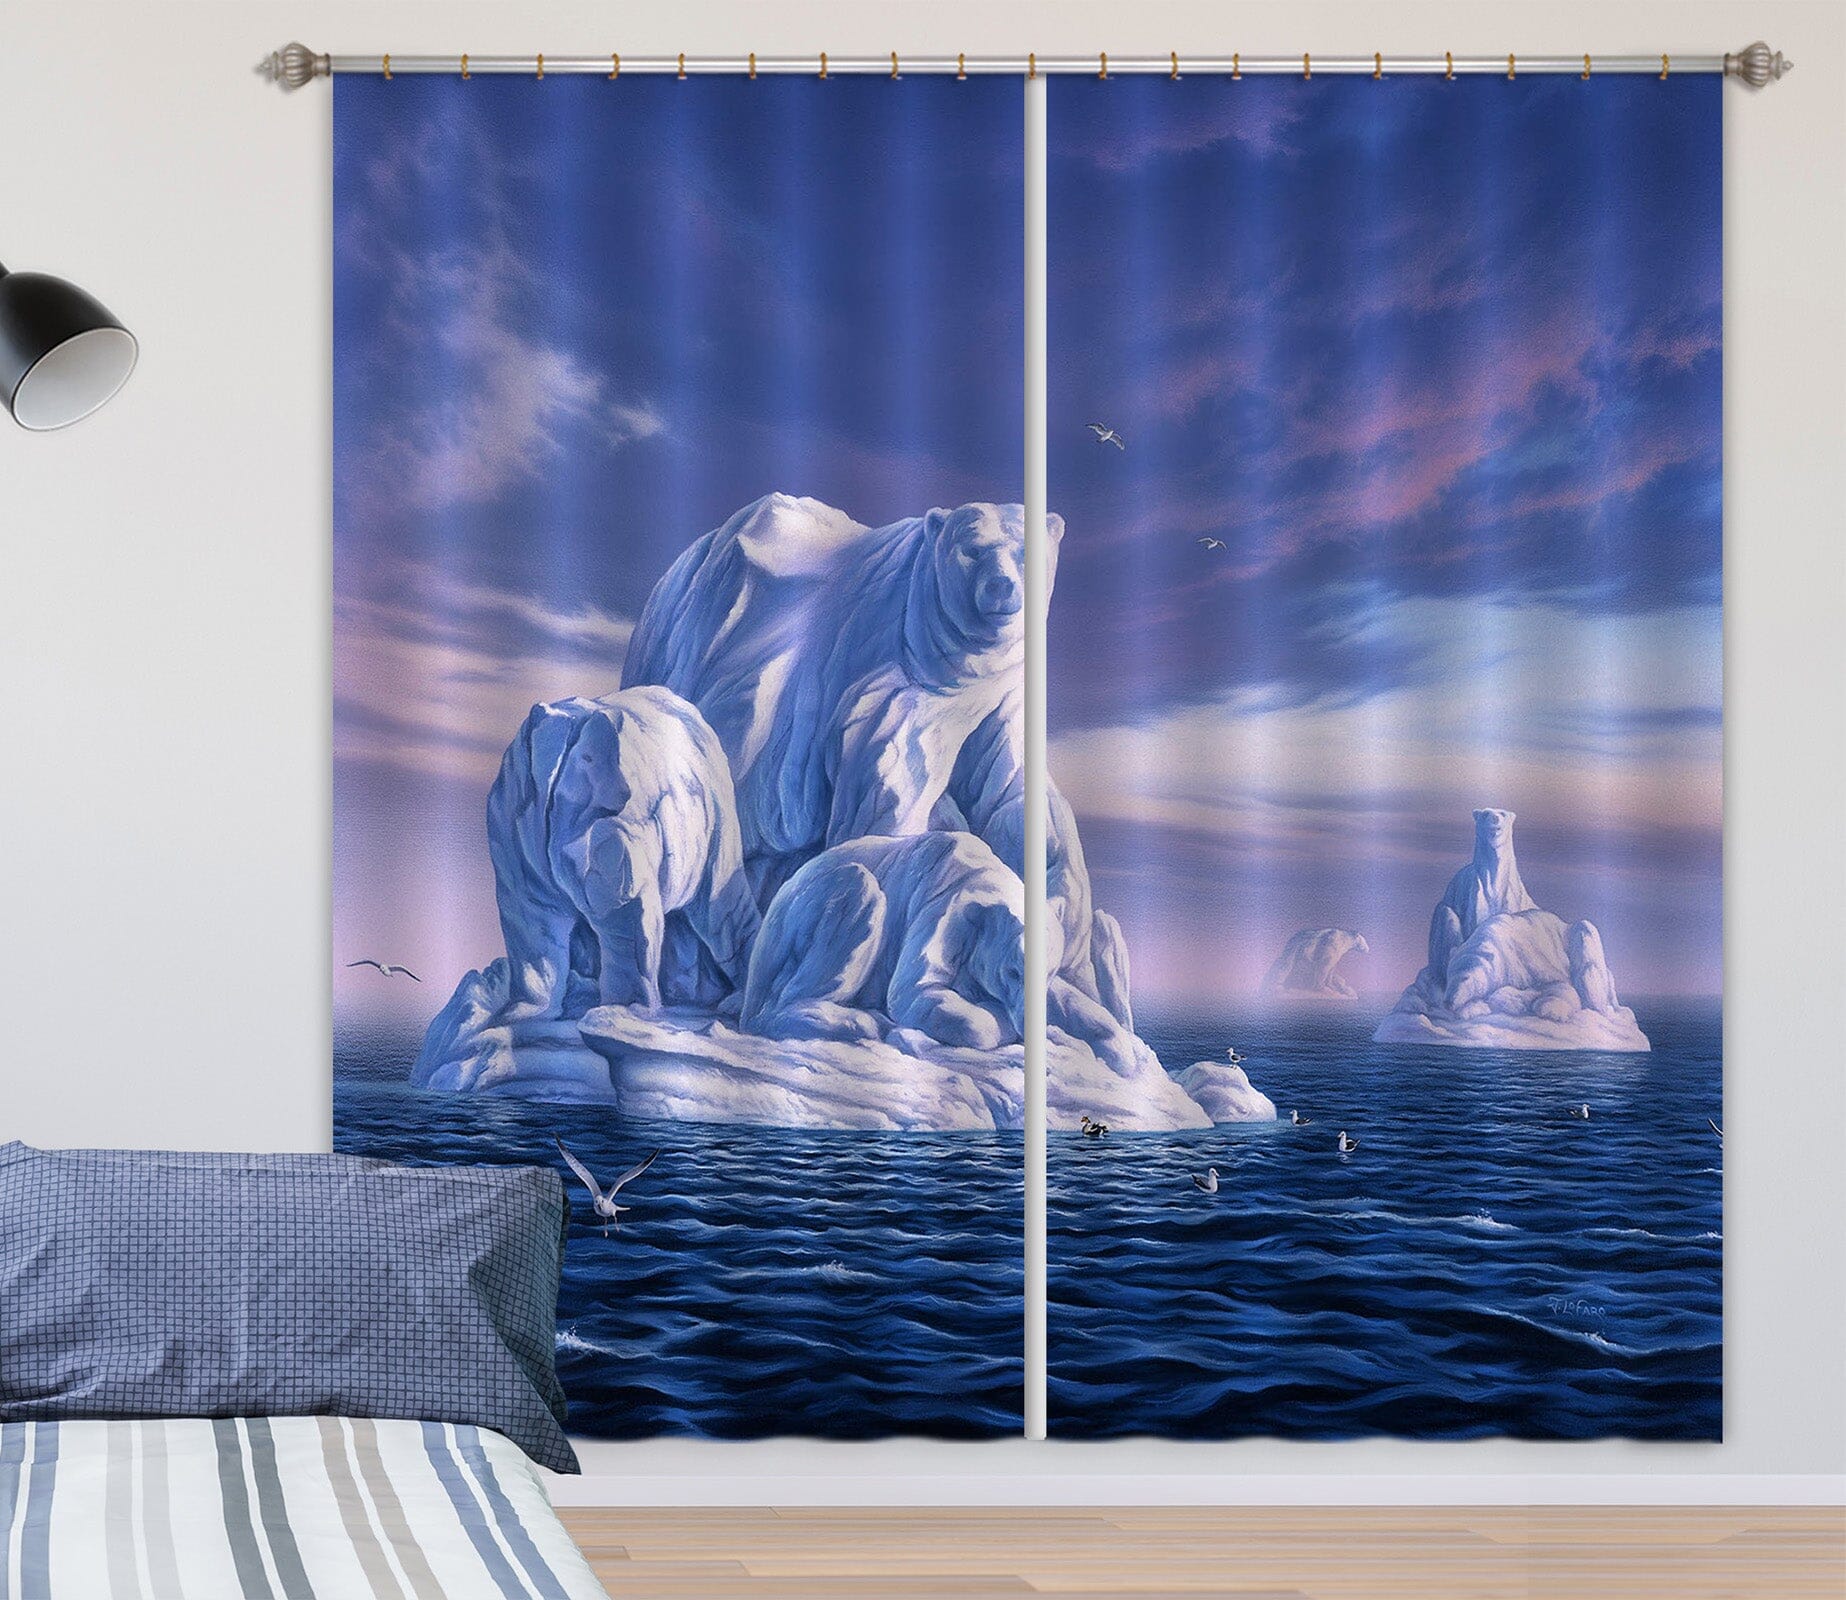 3D Polar Bear 068 Jerry LoFaro Curtain Curtains Drapes Curtains AJ Creativity Home 